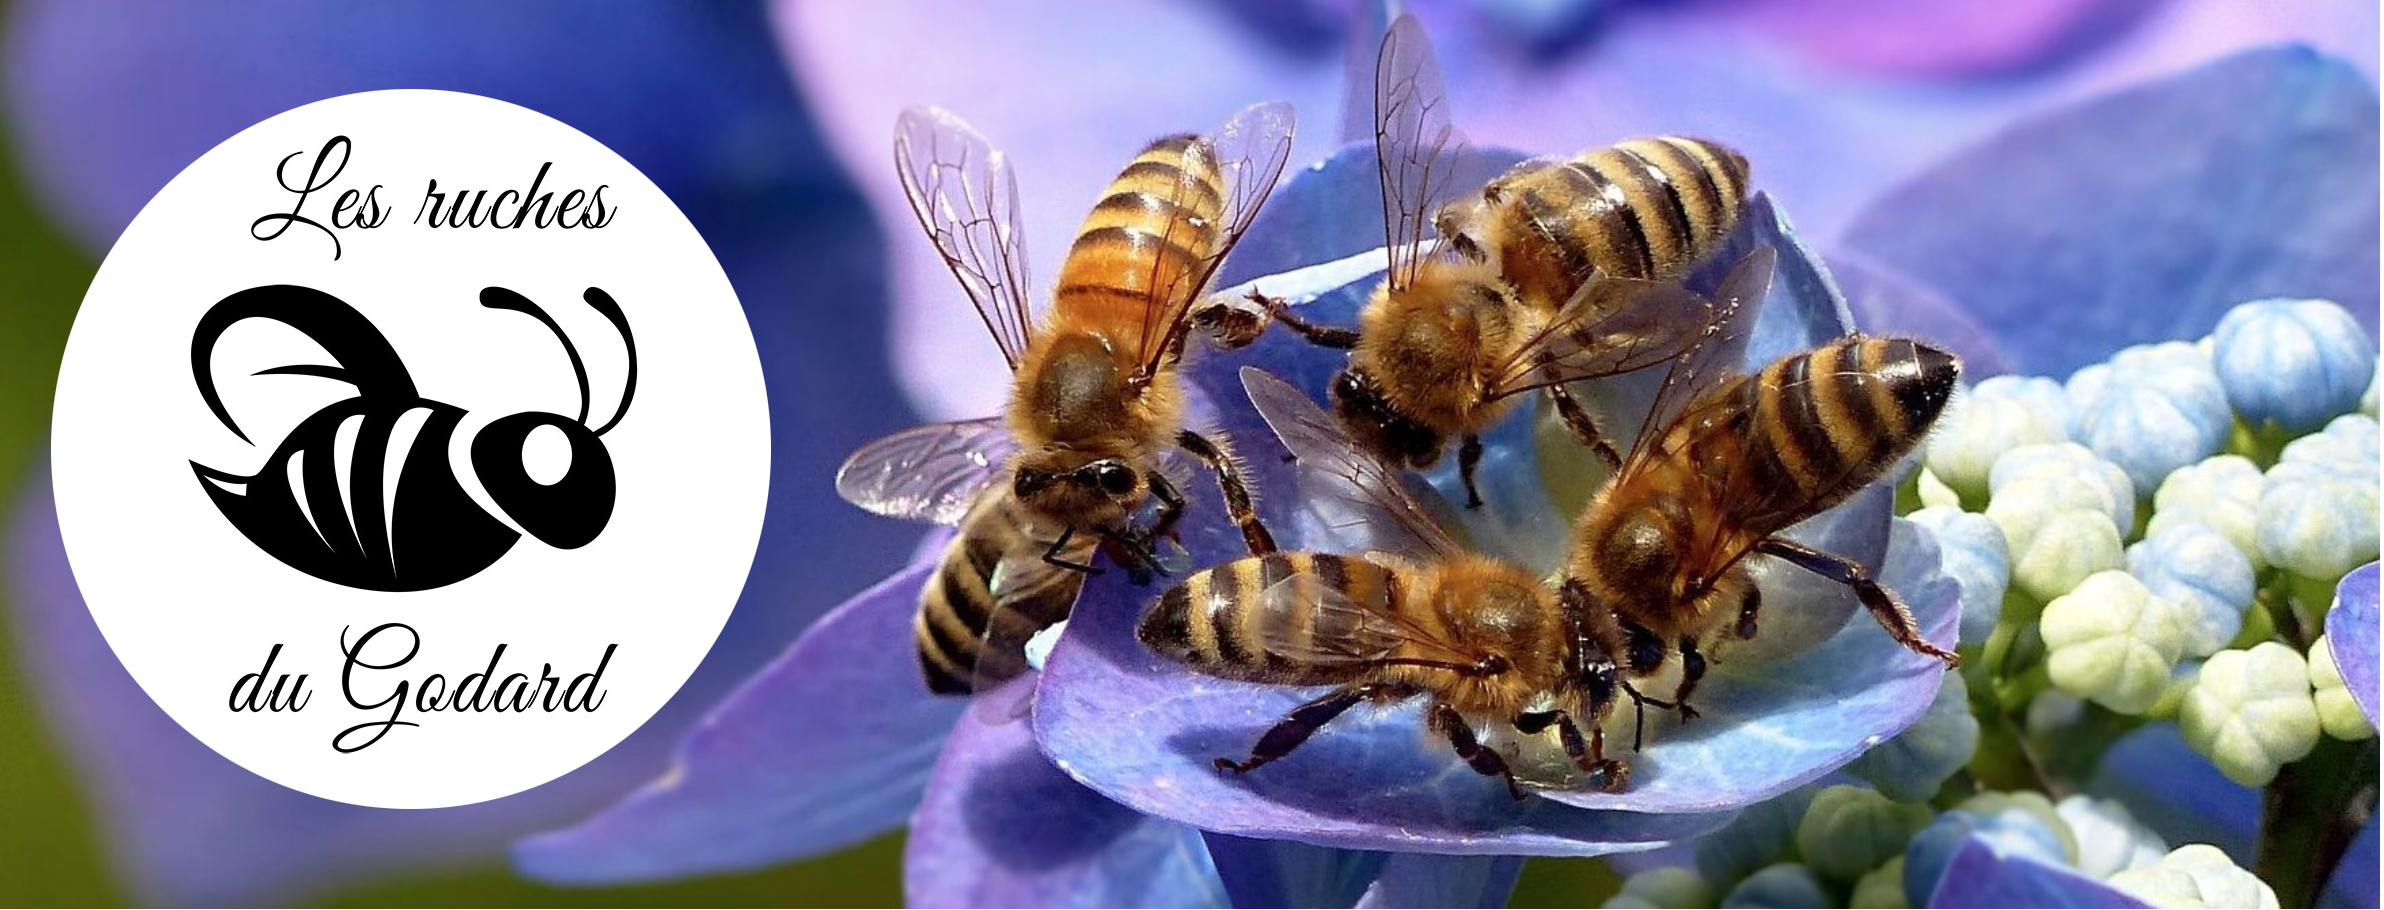 Entête : Les ruches du Godard